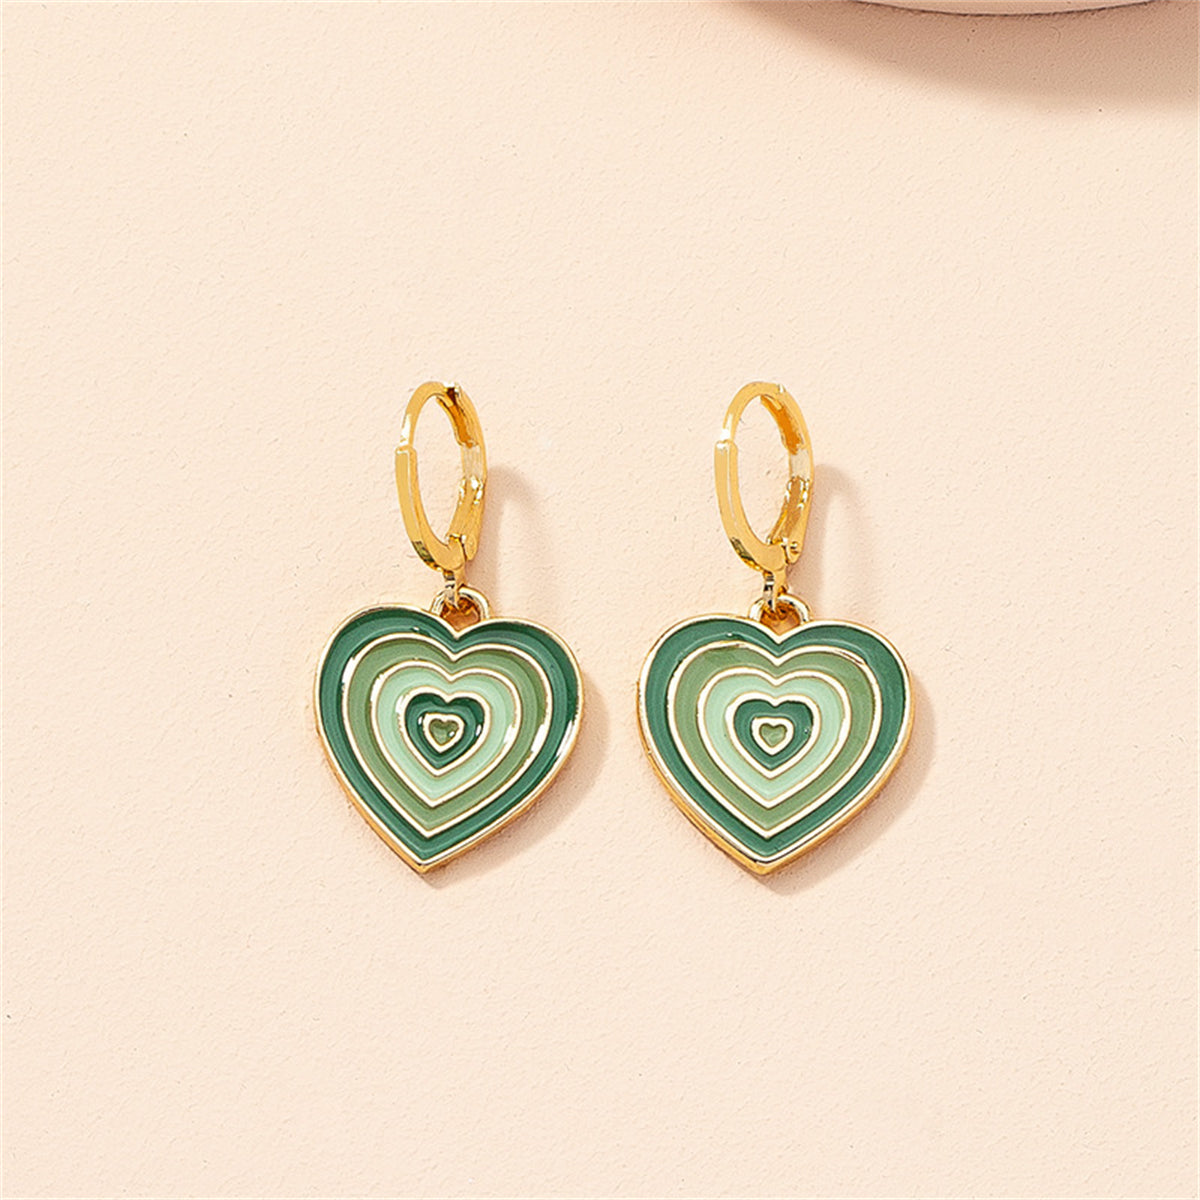 Green Enamel & 18K Gold-Plated Heart Huggie Drop Earrings